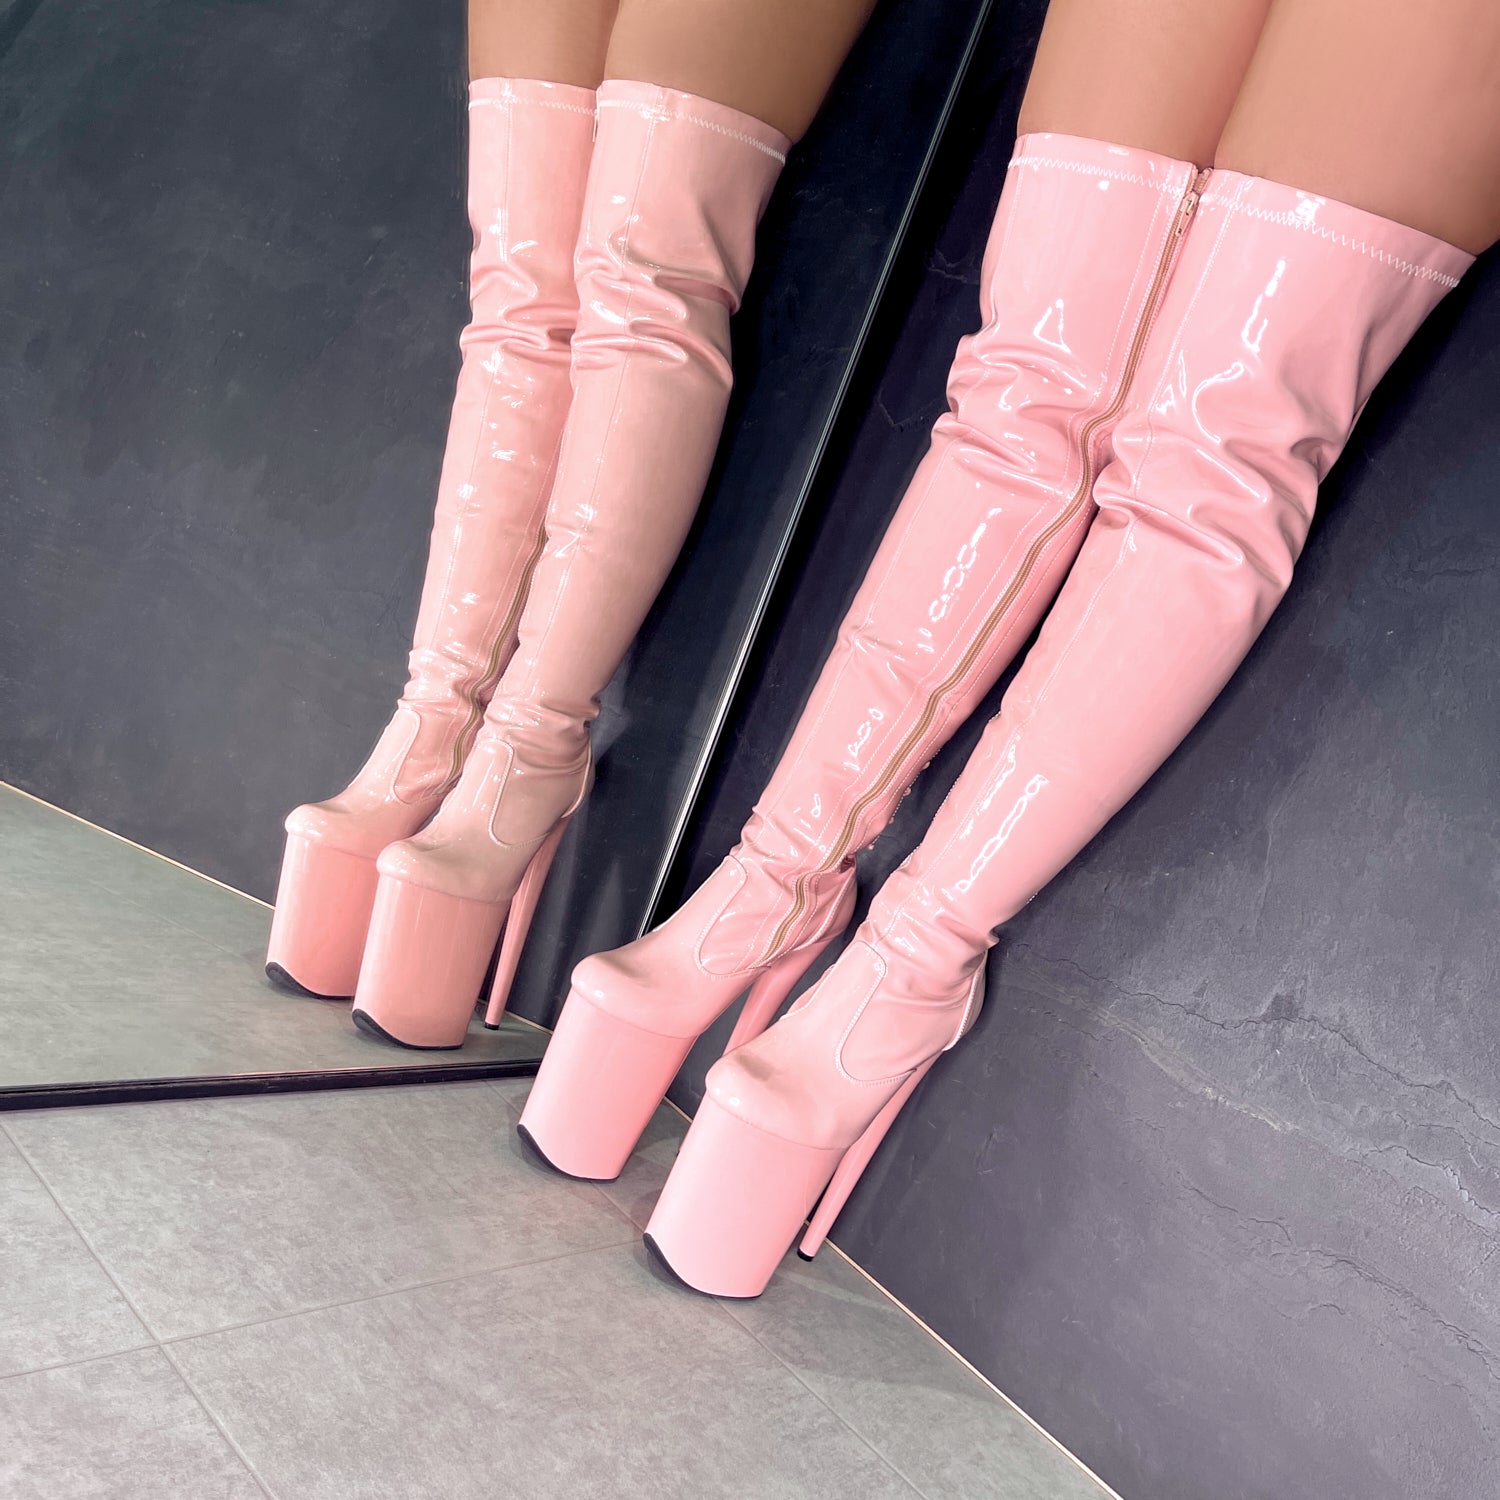 LipKit Thicc Thigh High - Candy Shop - 9 INCH, stripper shoe, stripper heel, pole heel, not a pleaser, platform, dancer, pole dance, floor work